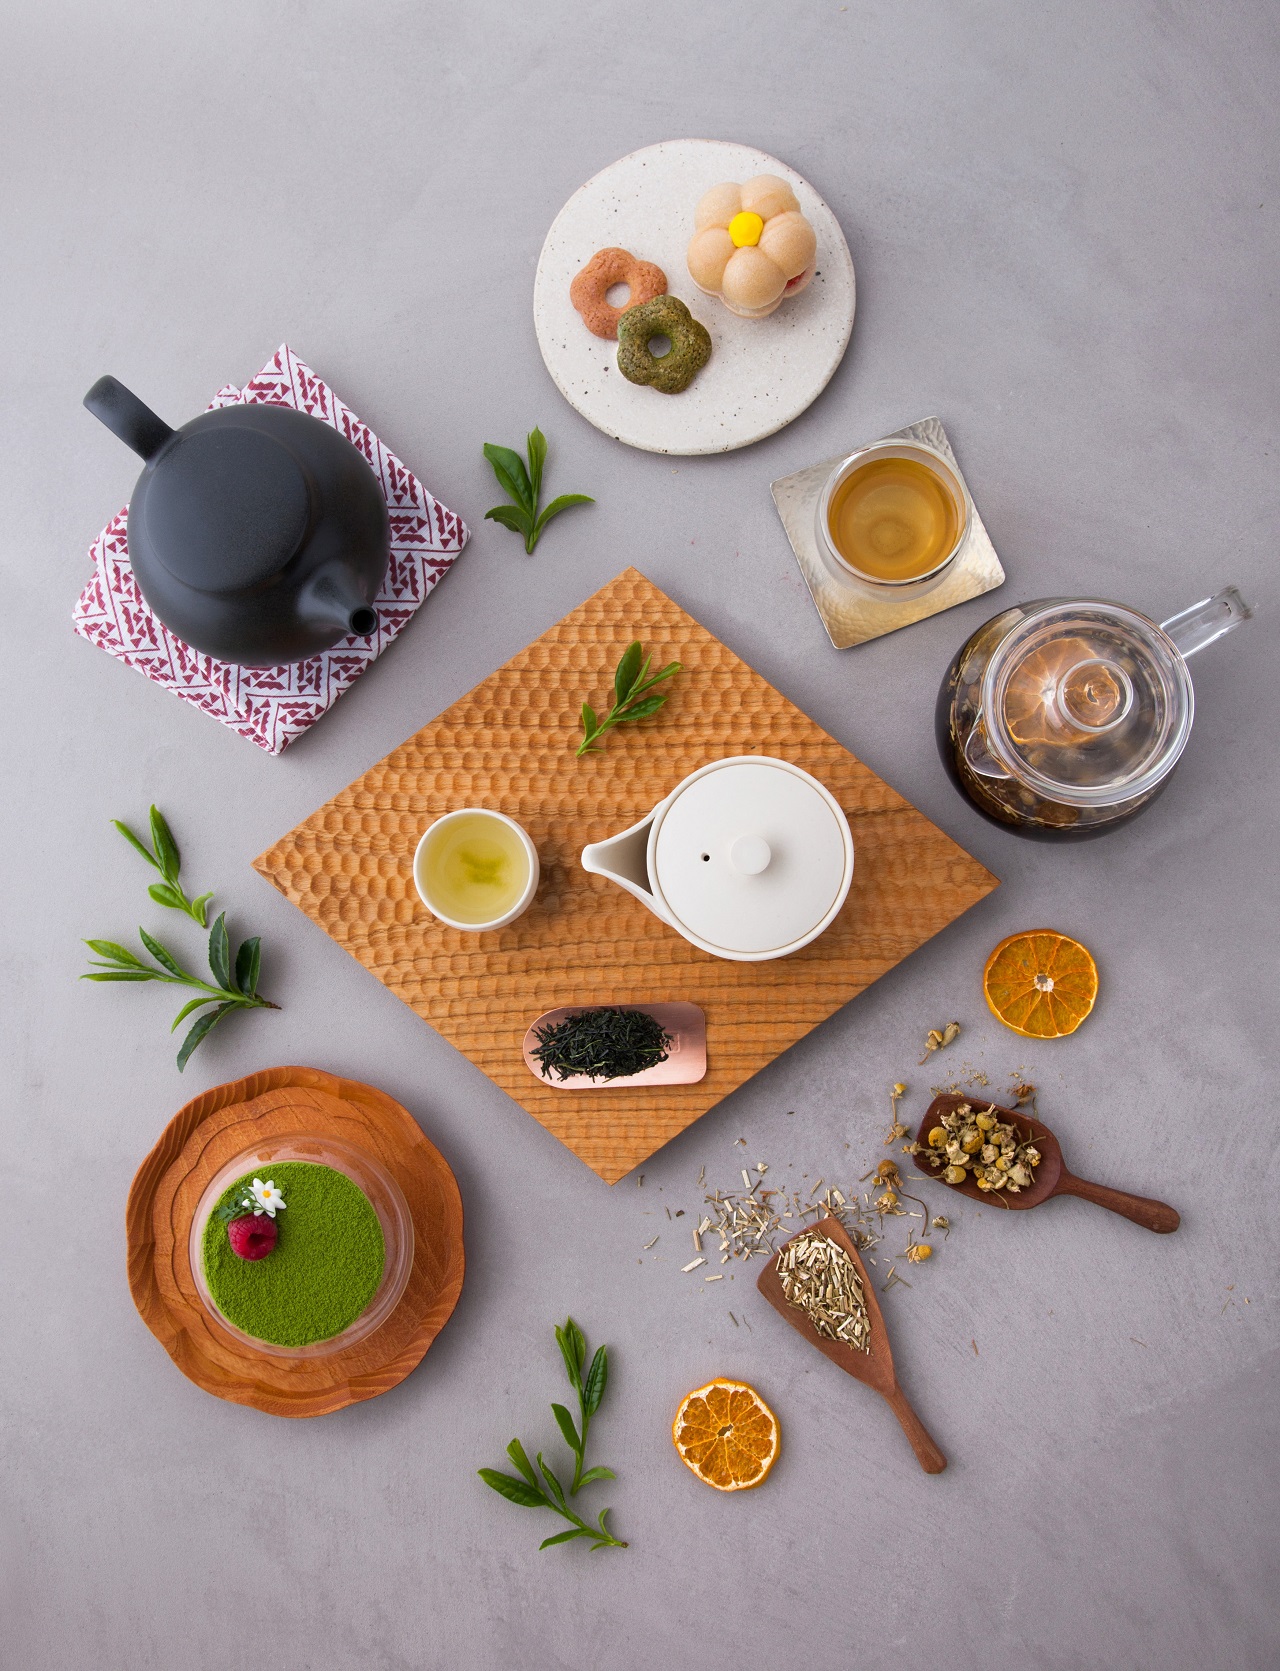 伝統ある宇治茶を気軽に 京都 福寿園の新感覚カフェが京都駅にオープン Tabizine 人生に旅心を